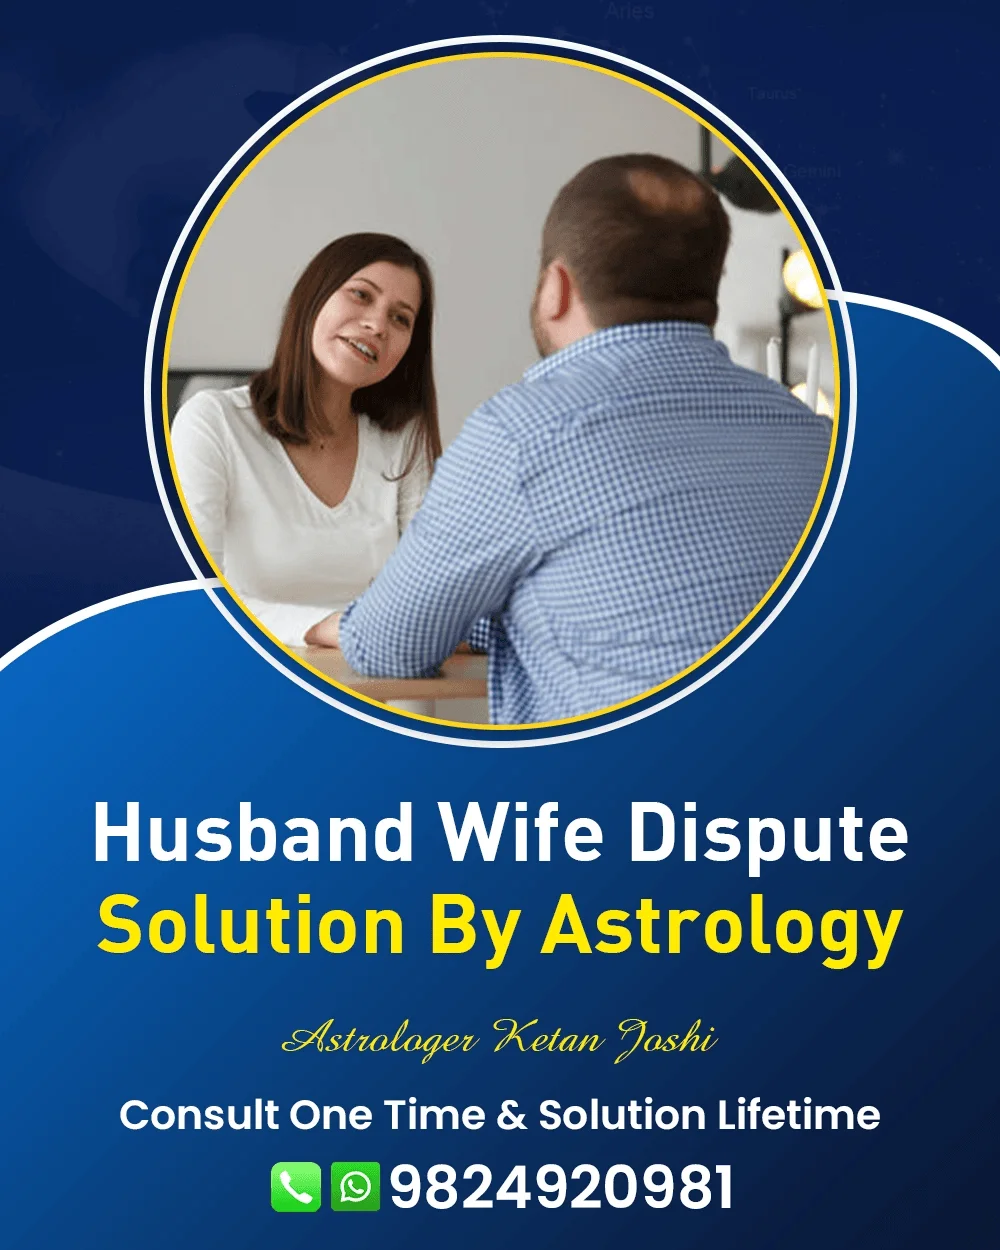 Husband Wife Problem Solution Astrologer In Godhra